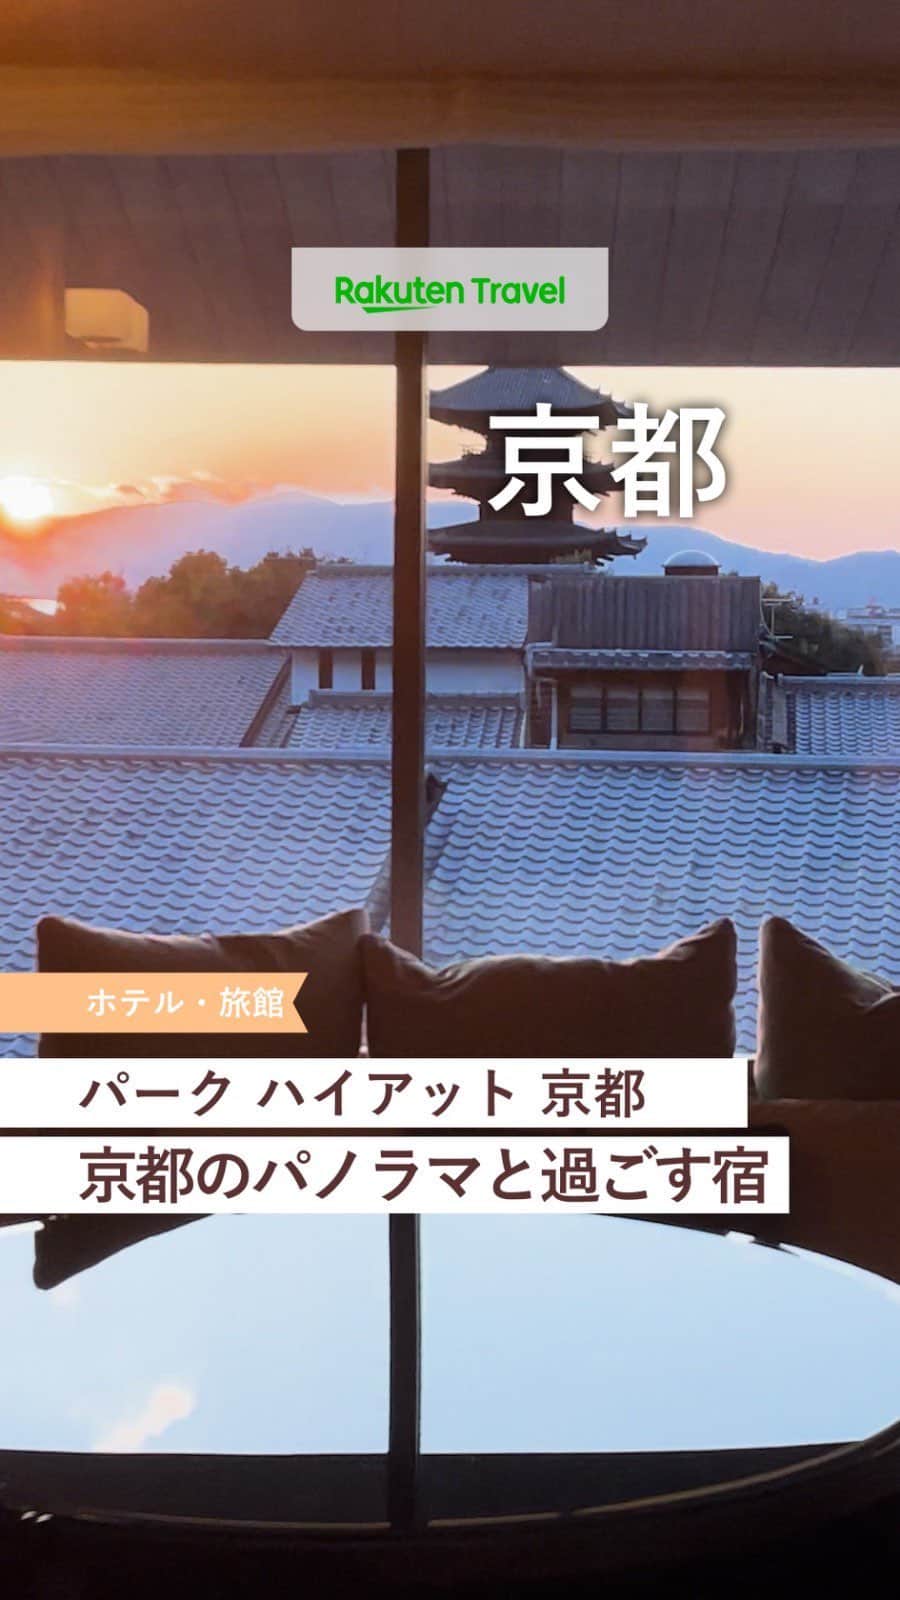 楽天トラベル のインスタグラム：「「泊まってみたい！」と思ったら投稿を【保存】して お気に入りのホテルをコレクションしちゃおう💚  ーーーーーーーーーーーーーー  🏨パーク ハイアット 京都 📍京都府京都市  ーーーーーーーーーーーーーー  八坂の塔を含む京都の街を望む丘の中腹にあるラグジュアリーゲストハウス 邸宅に招かれたかのようなもてなしの心や美意識をおこもりステイで堪能できます😌  ーーーーーーーーーーーーーー  ◆京都府京都市東山区高台寺桝屋町360 ◆関西国際空港から約100km, お車で約90-120分 ◆総客室数70室  ーーーーーーーーーーーーーー  利用者数No.1旅行予約サイト💚楽天トラベル @rakutentravel 旅の計画に夢中になれるインスタマガジン  旅の思い出もぜひコメント欄で教えてね🛫」